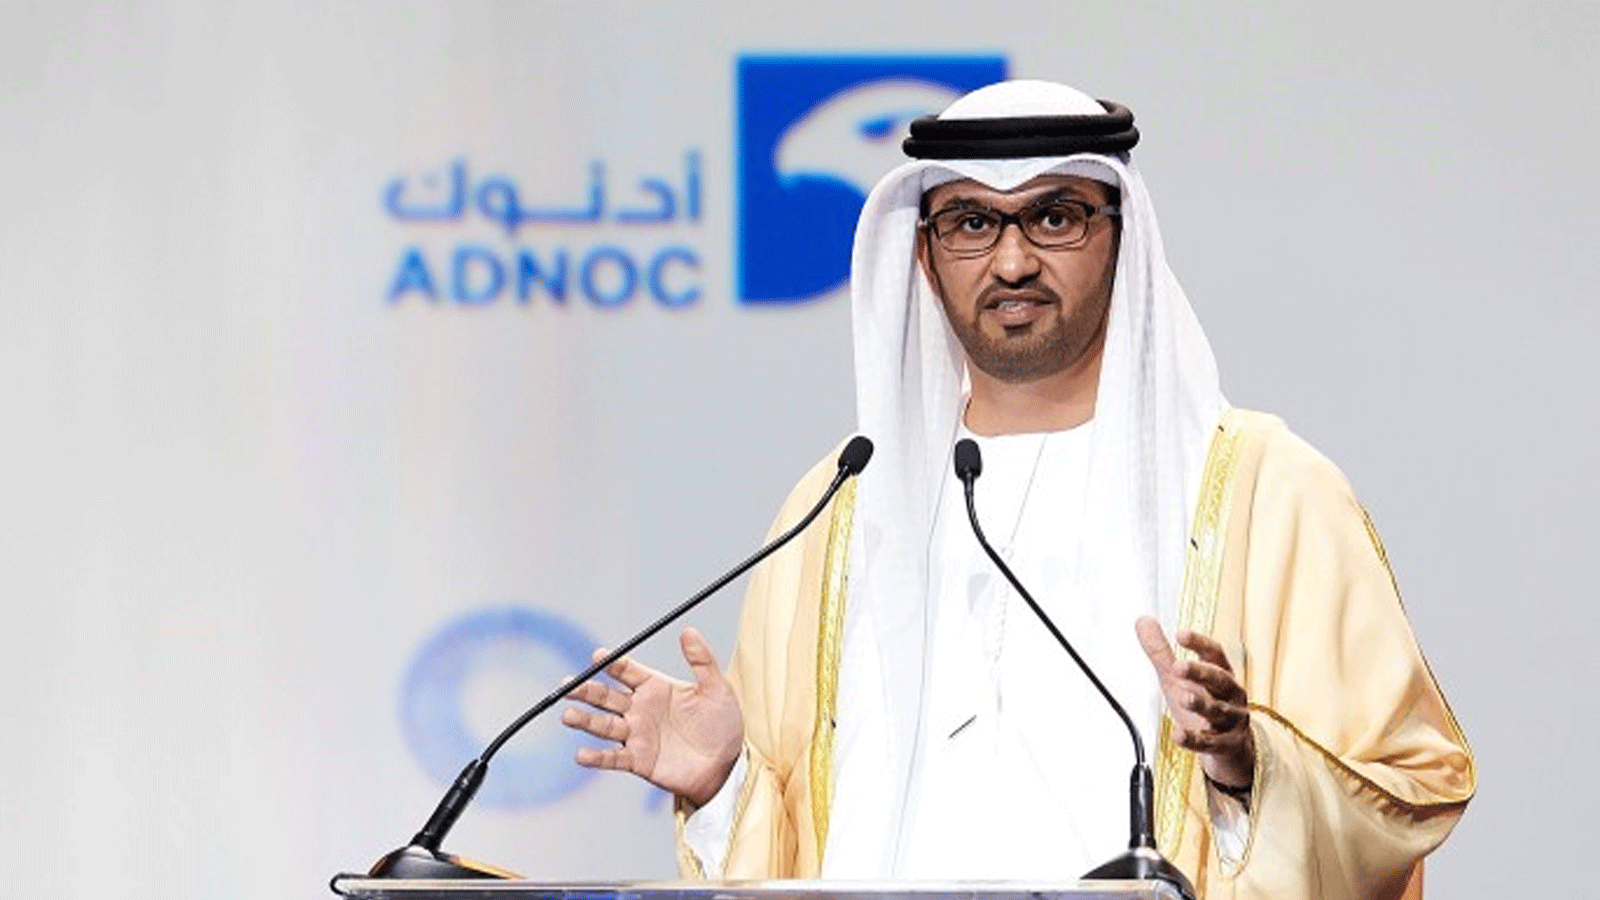 سلطان الجابر وزير الصناعة والتكنولوجيا المتقدمة في دولة الإمارات والرئيس المعيّن لـ(COP28)